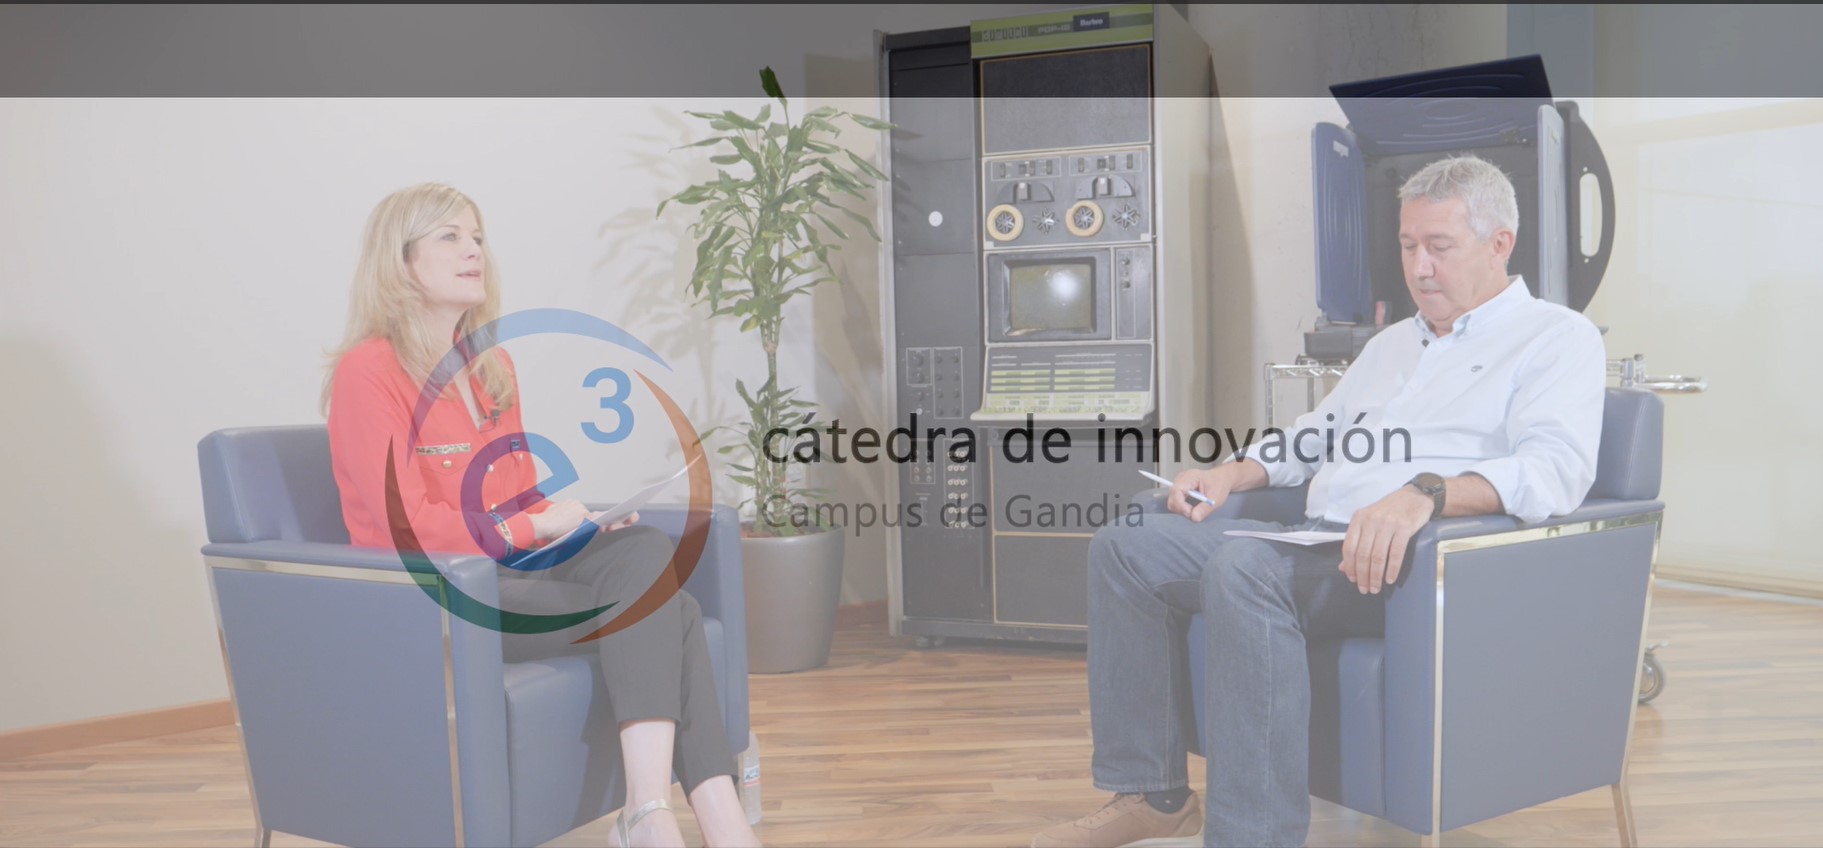 Catedra-innovacion-entrevista_Odec-1